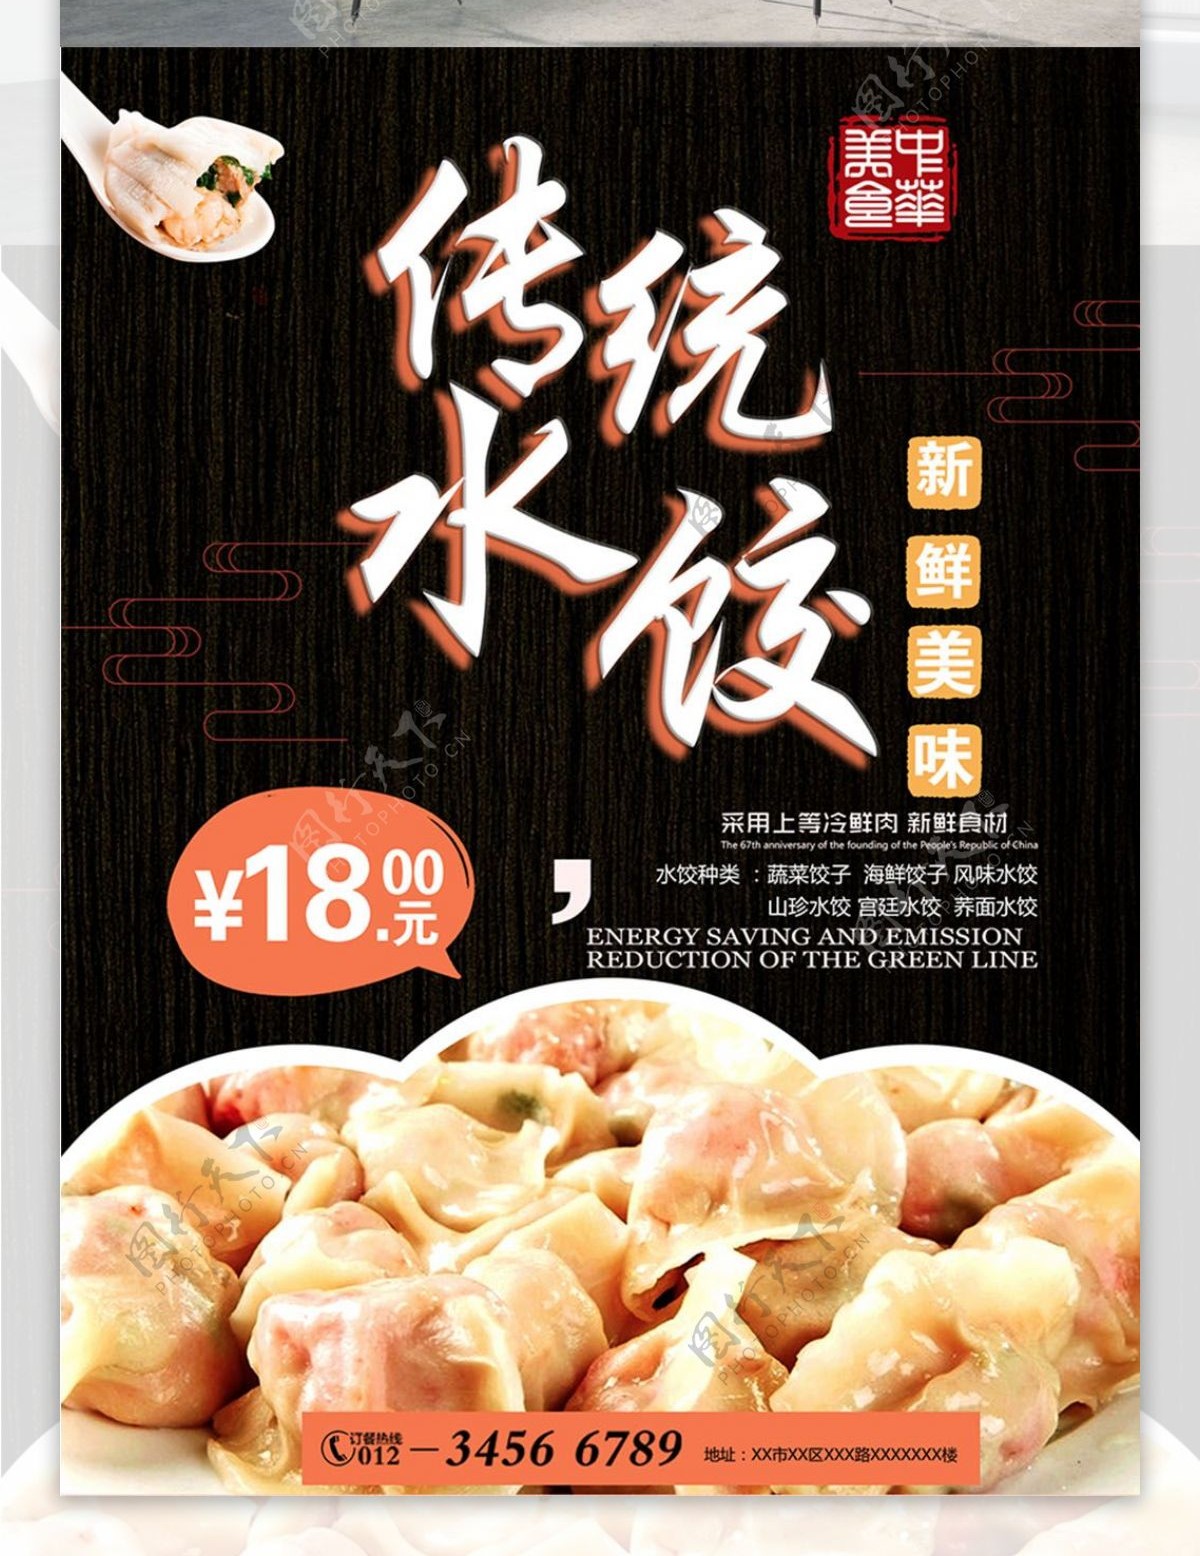 18元美味美食传统水饺海报